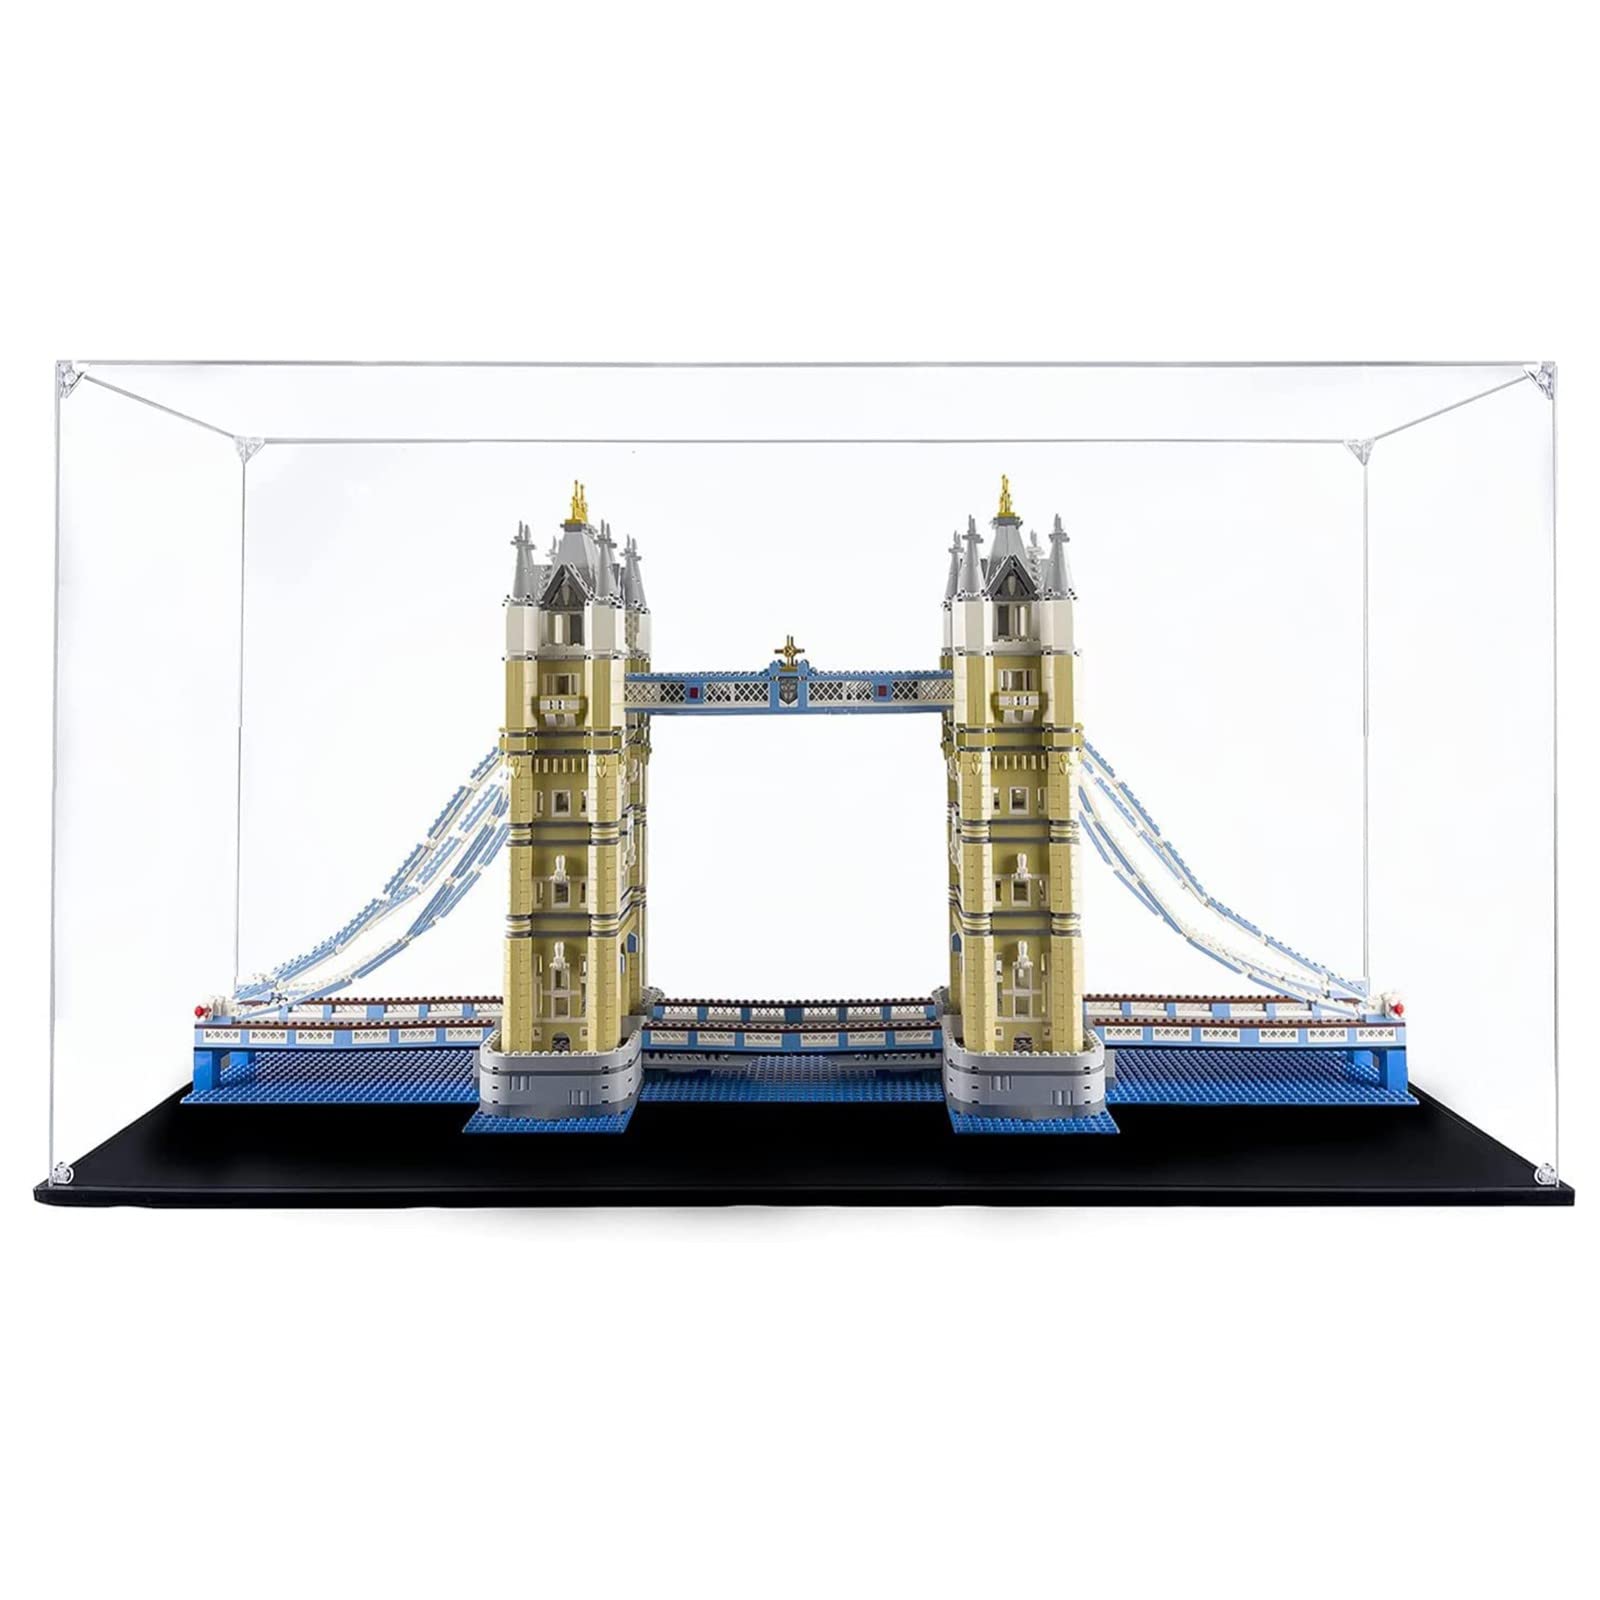 Acryl Vitrine Box Für Lego 10214 Tower Bridge, Acryl Vitrine, staubdichte Aufbewahrungsbox Präsentationsbox für Minifiguren Spielzeug Sammlung (107 * 30 * 50cm) 3mm